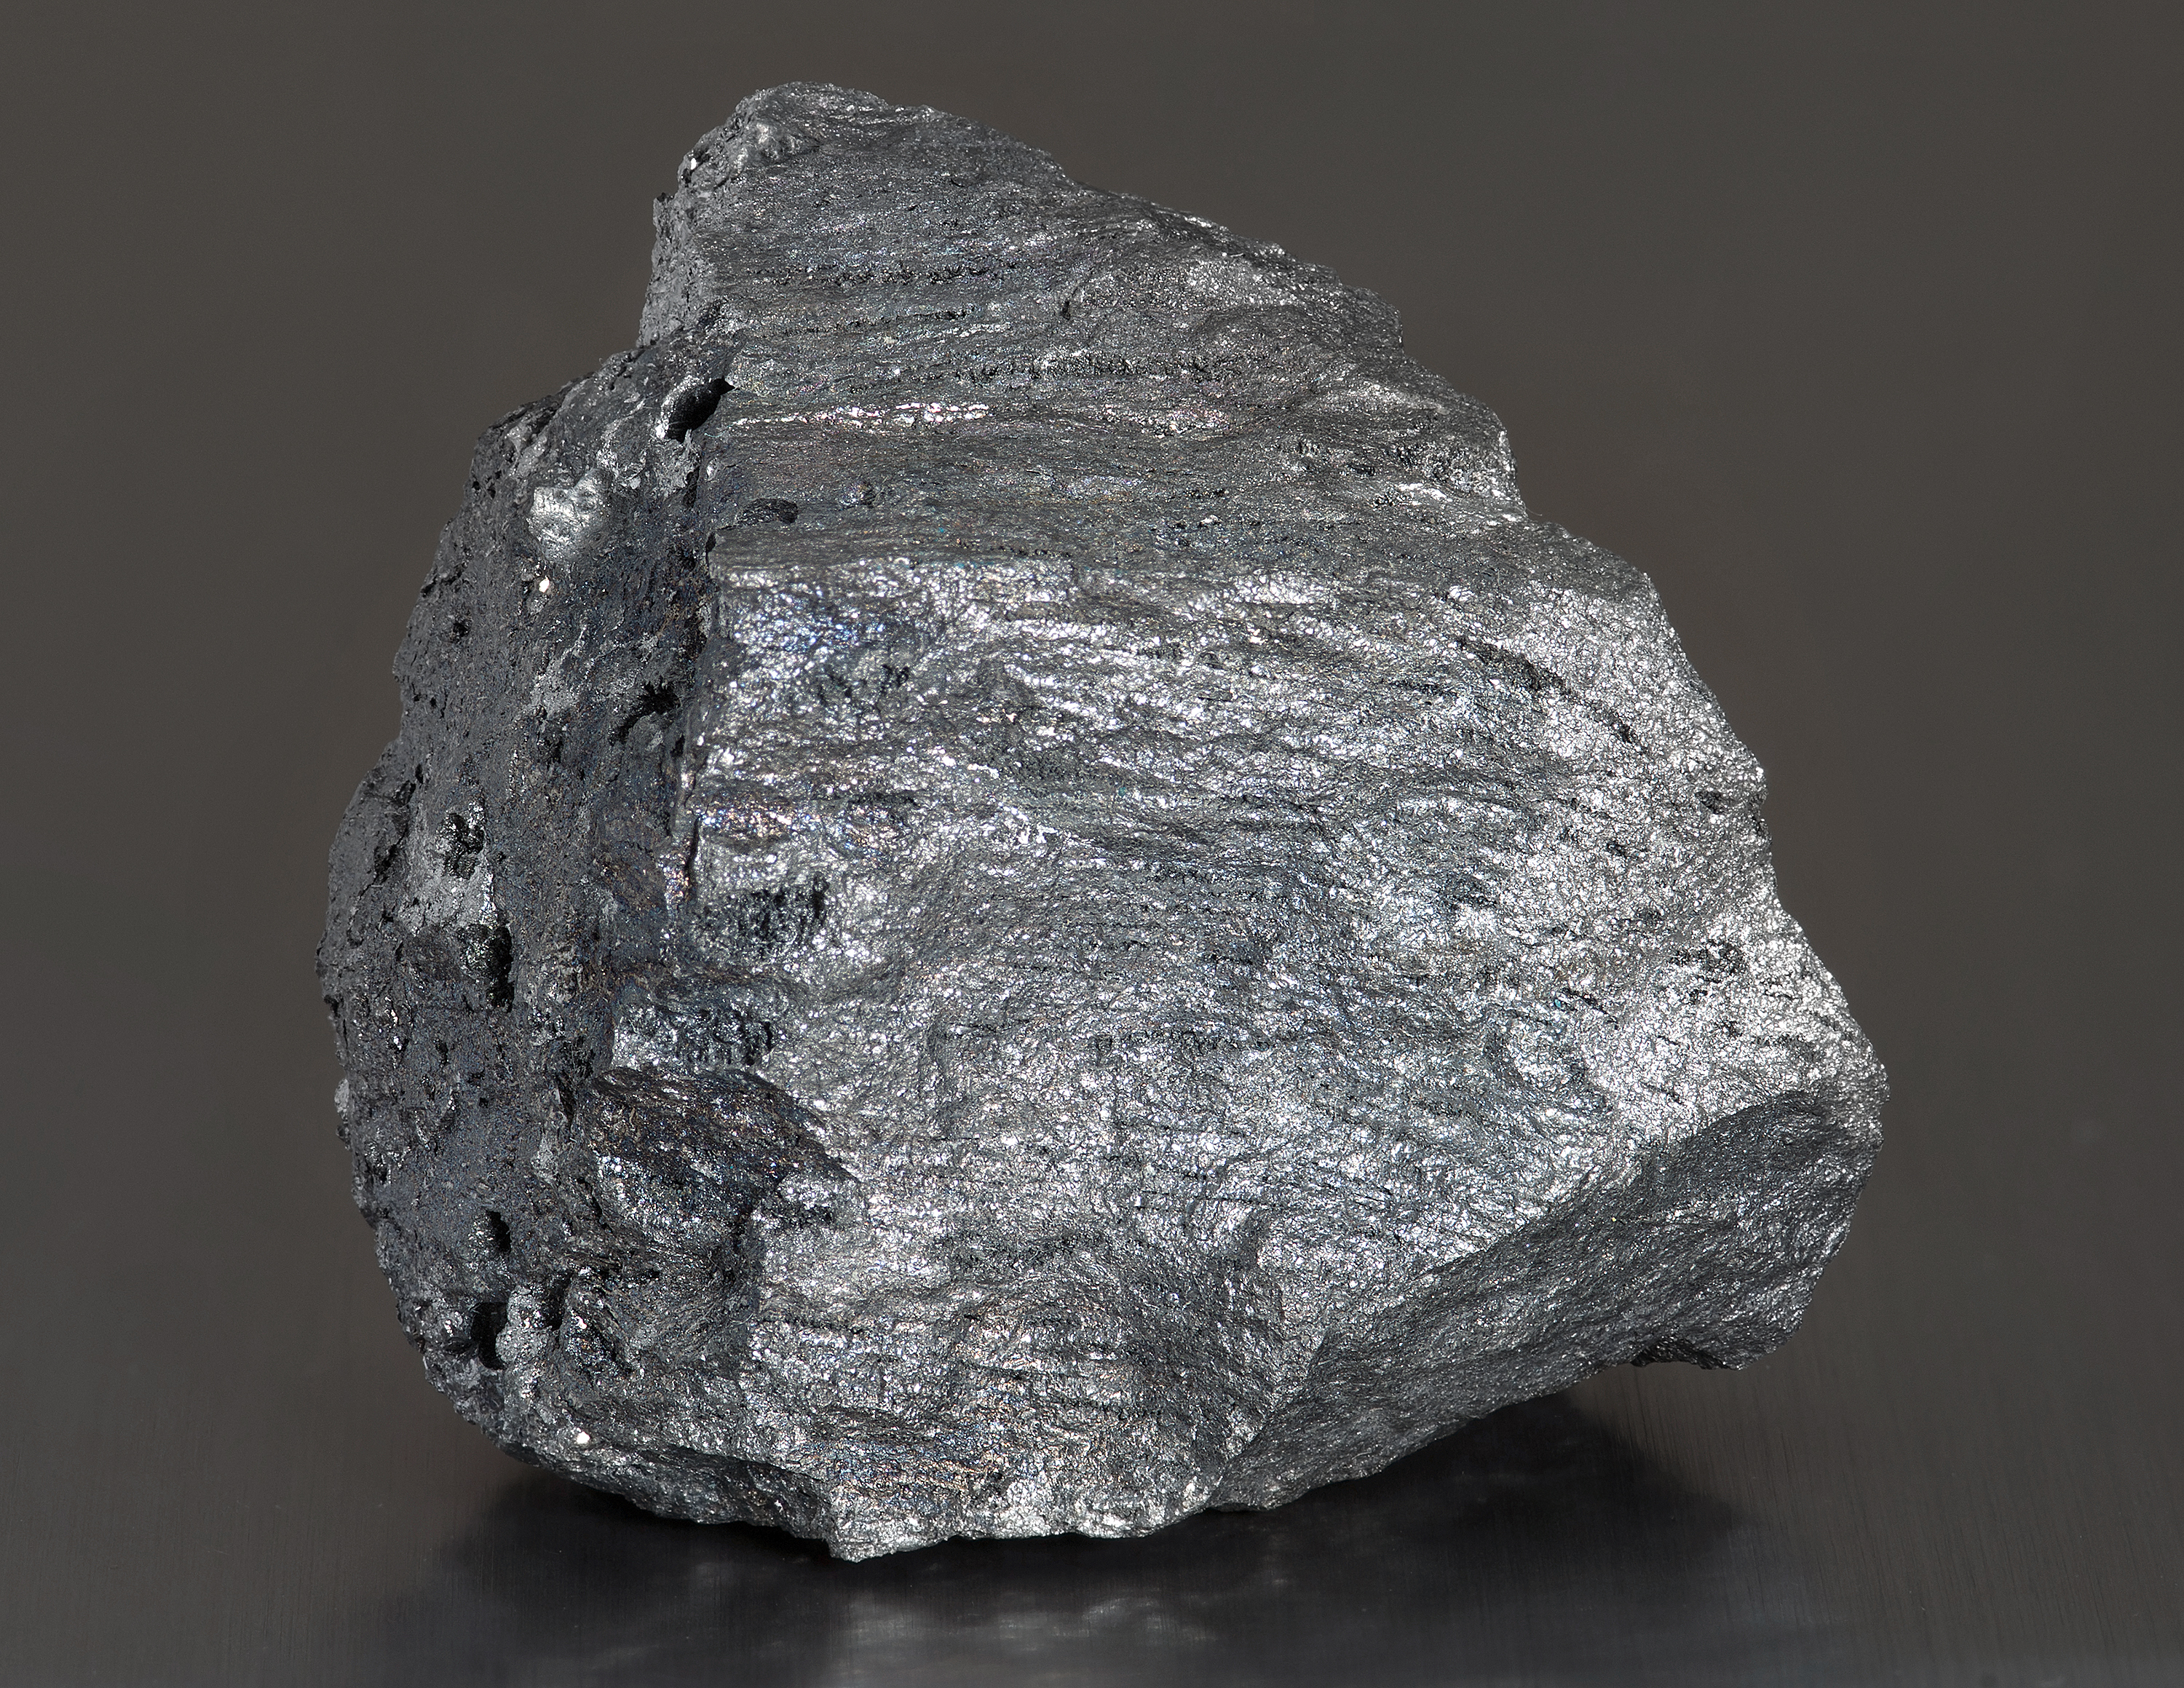 Železo sa v prírode vyskytuje v podobe minerálov, a to kvôli jeho nestálosti a reaktivite v elementárnej forme